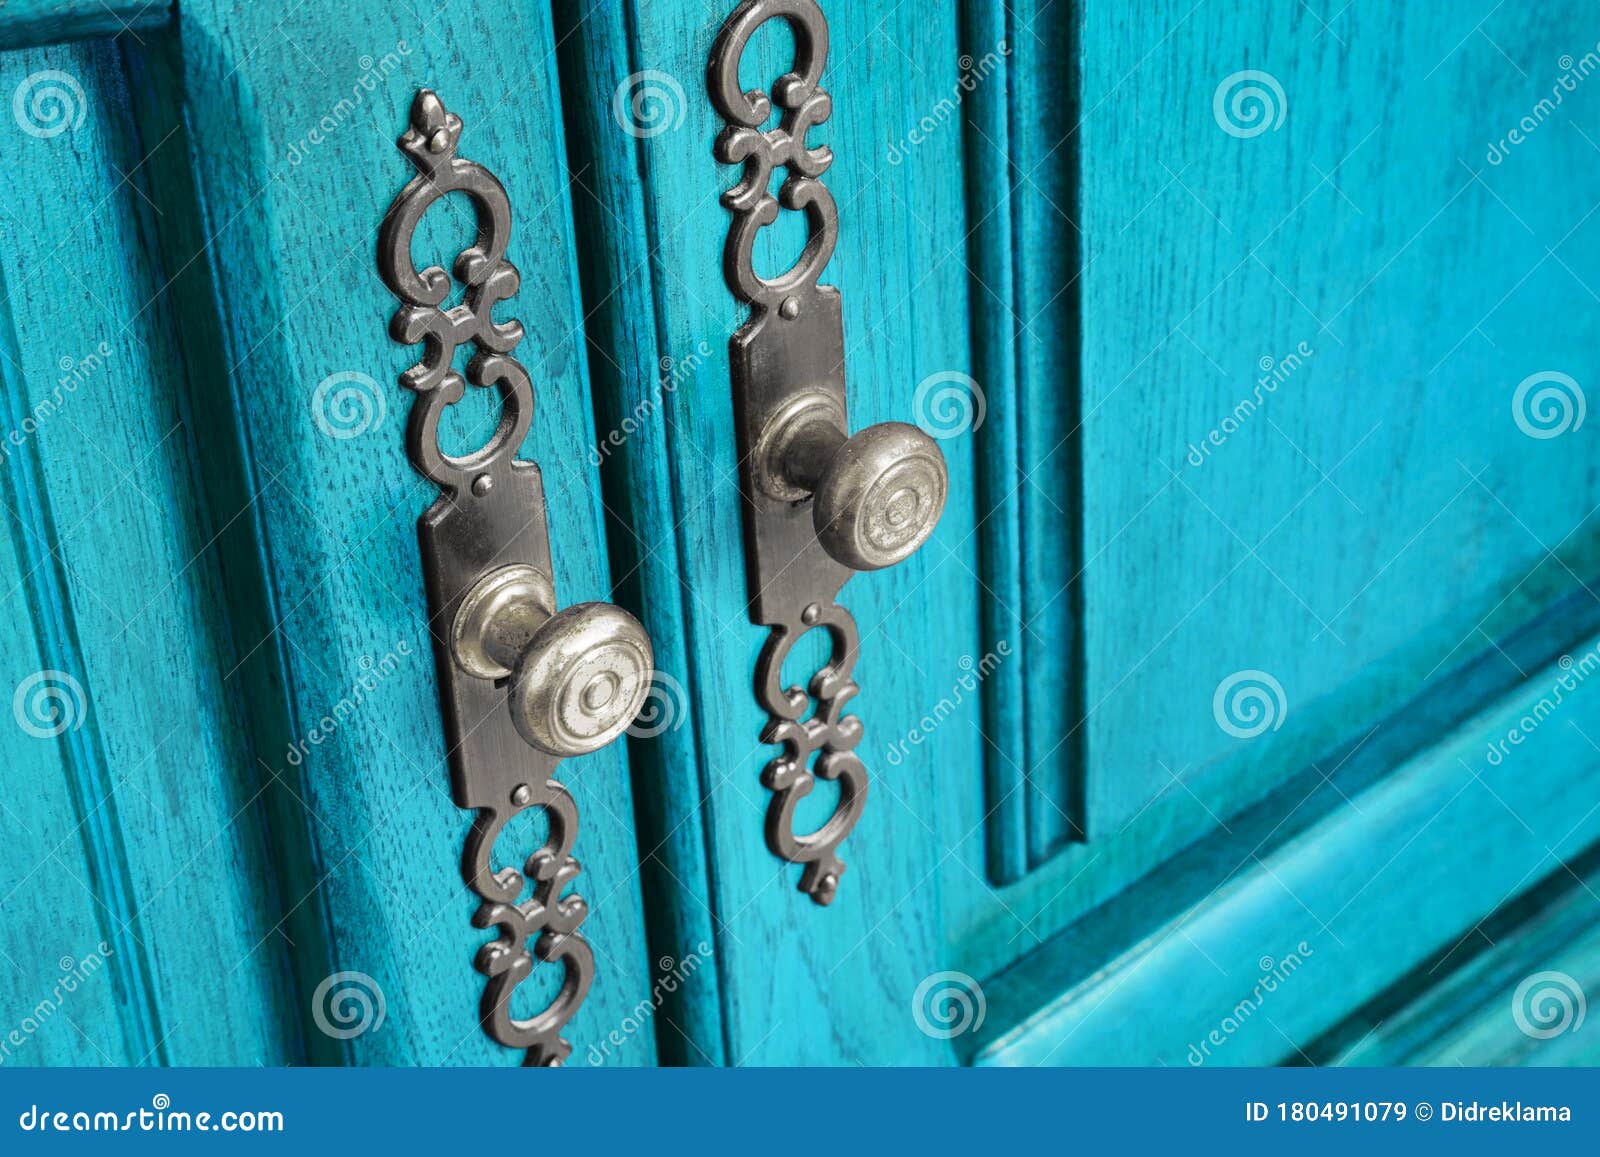 brass door handles with ornate escutcheons